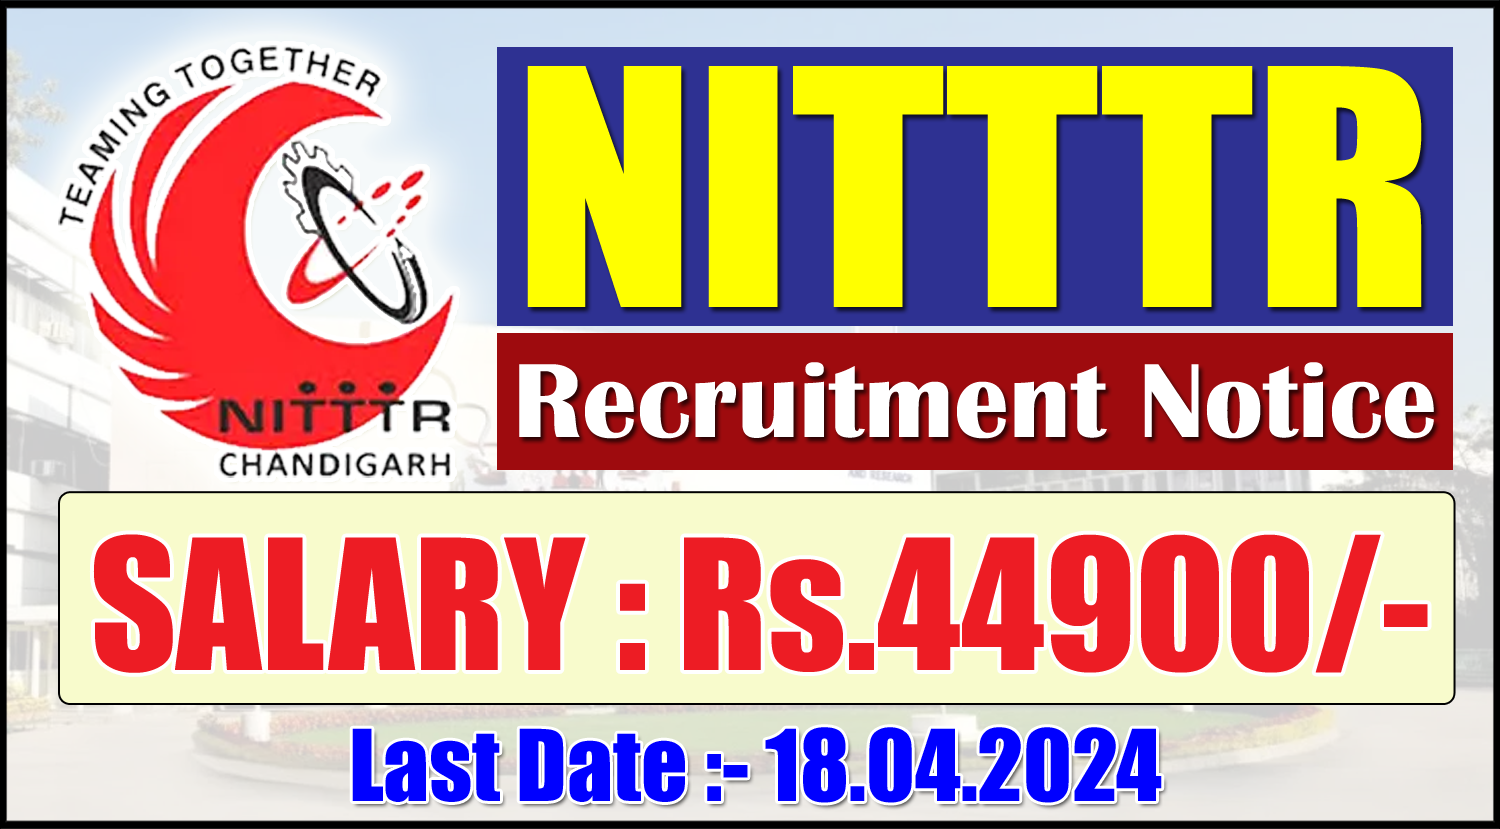 NITTTR-Recruitment